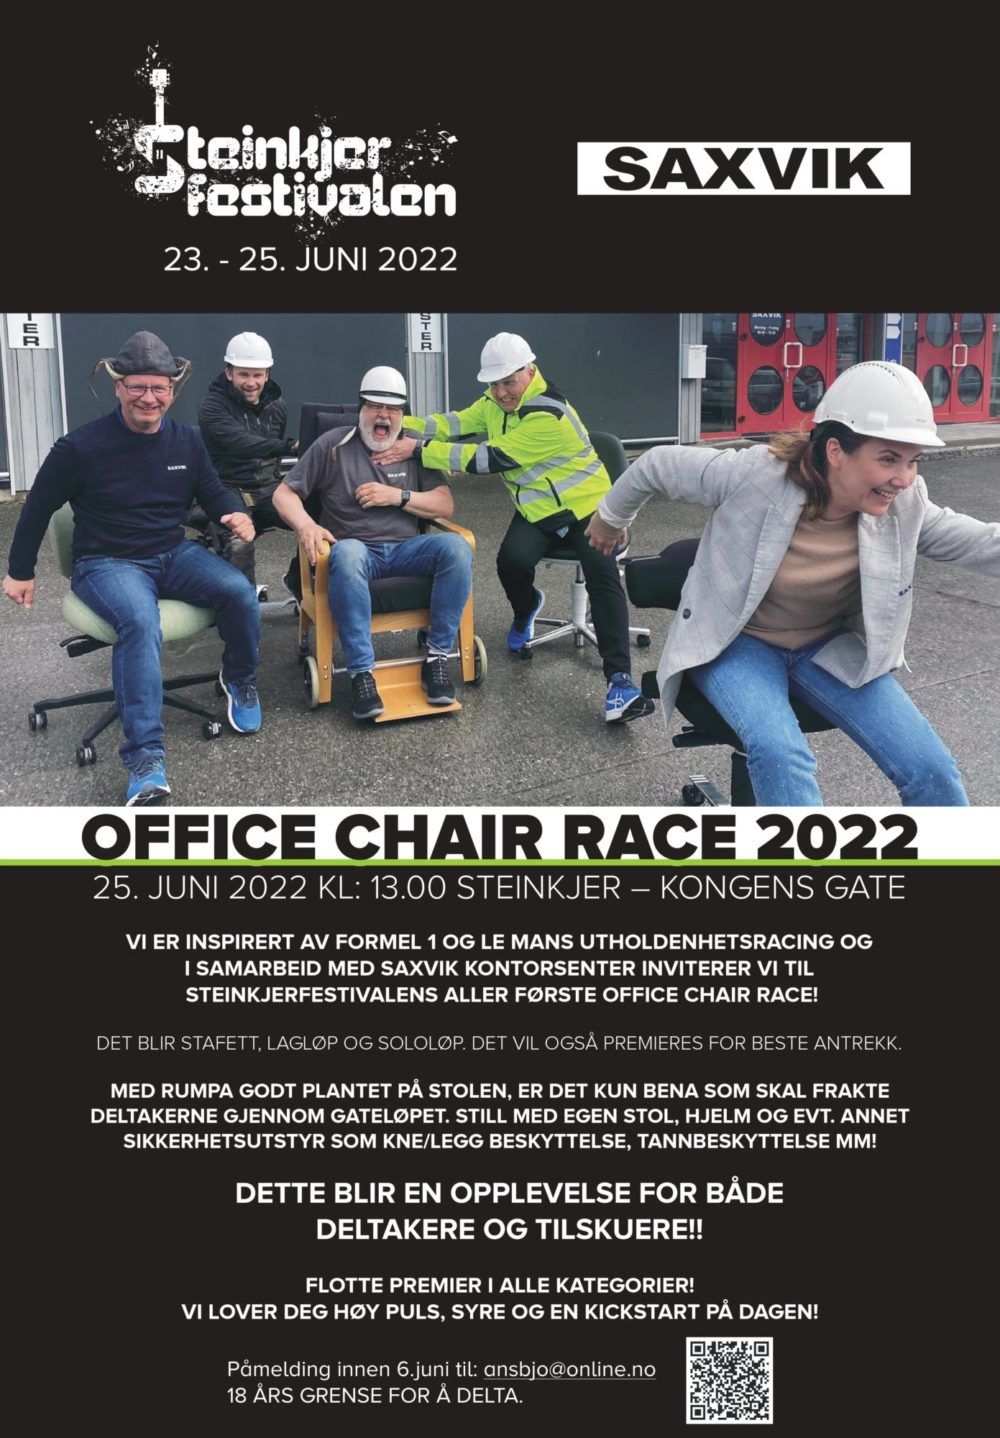 Saxvik er sponsor for Steinkjer festivalens aller først Office Chair Race
 25.juni 2022 kl.13.00 18 års grense
Den offisielle plakaten